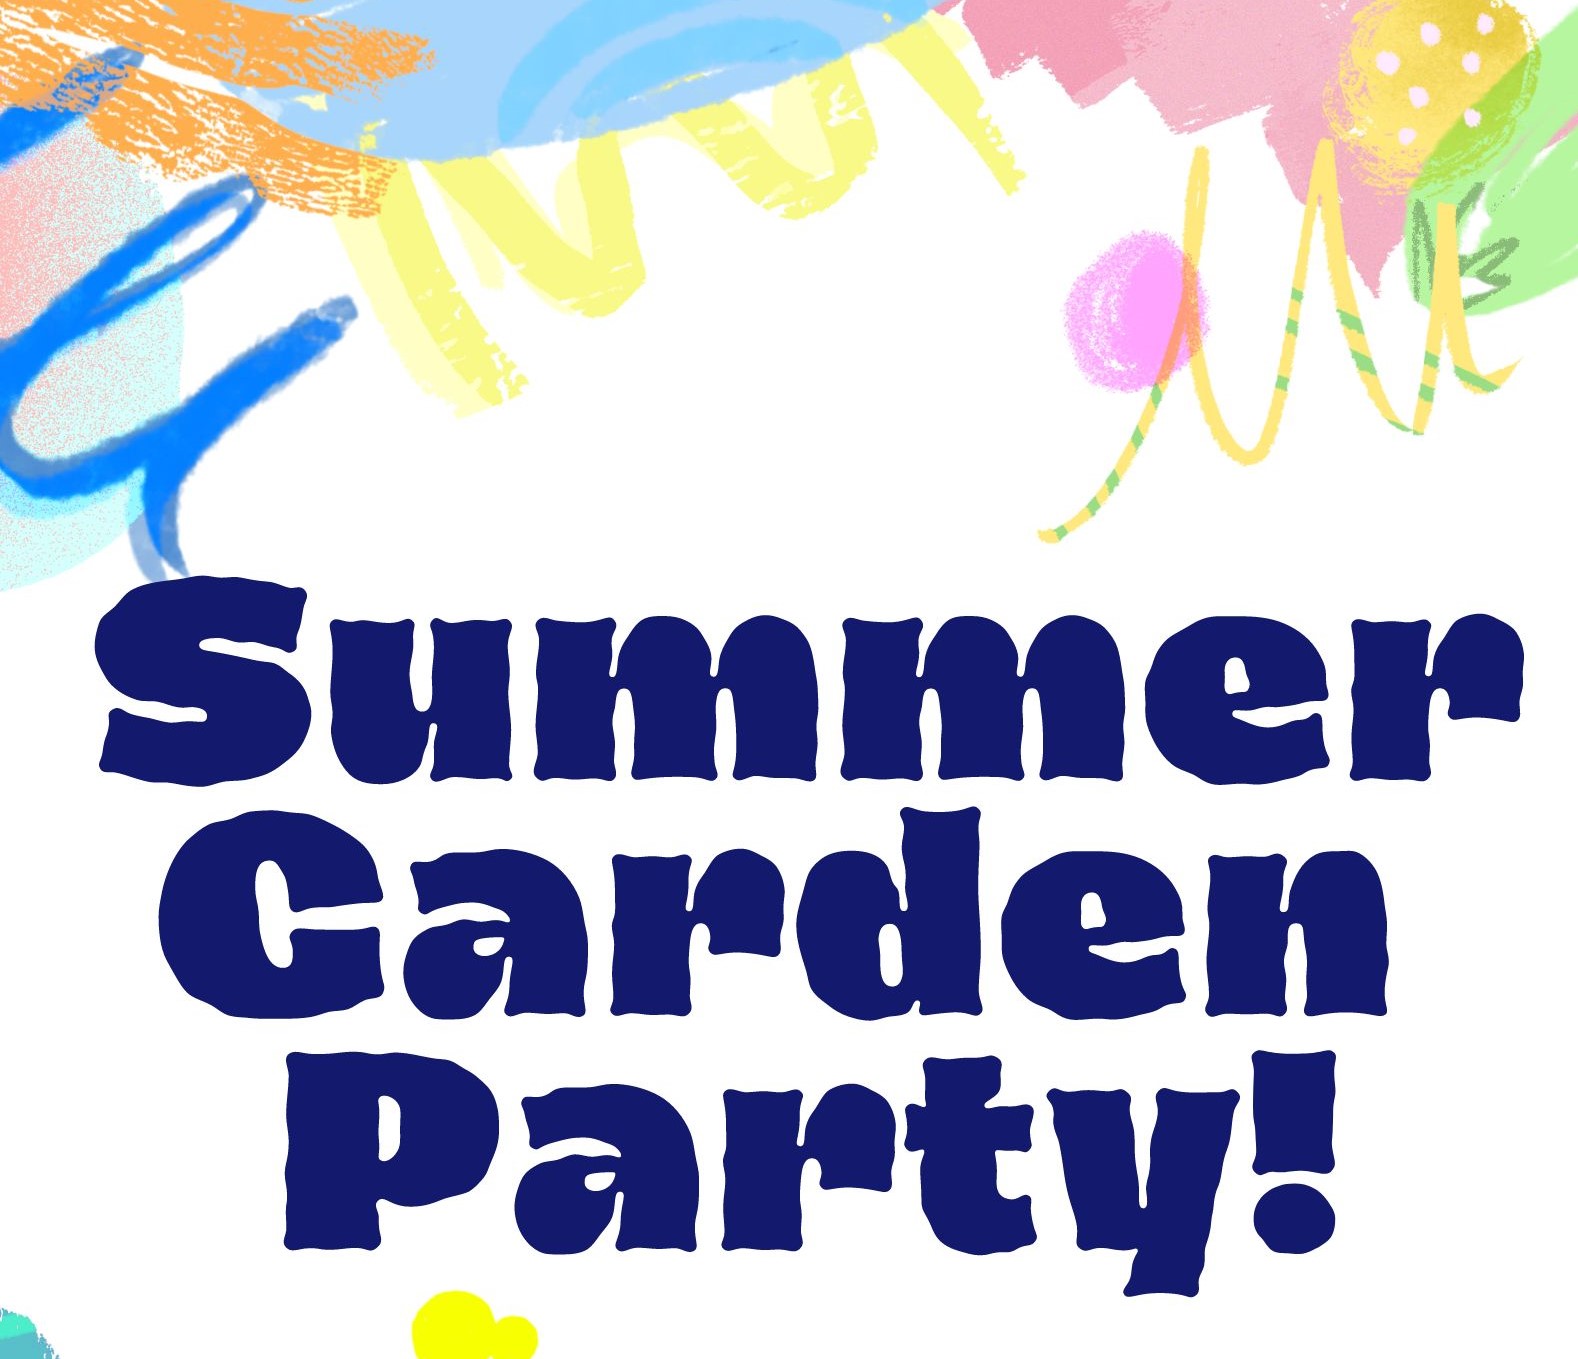 Summer Garden Party! Kid's Craft Day